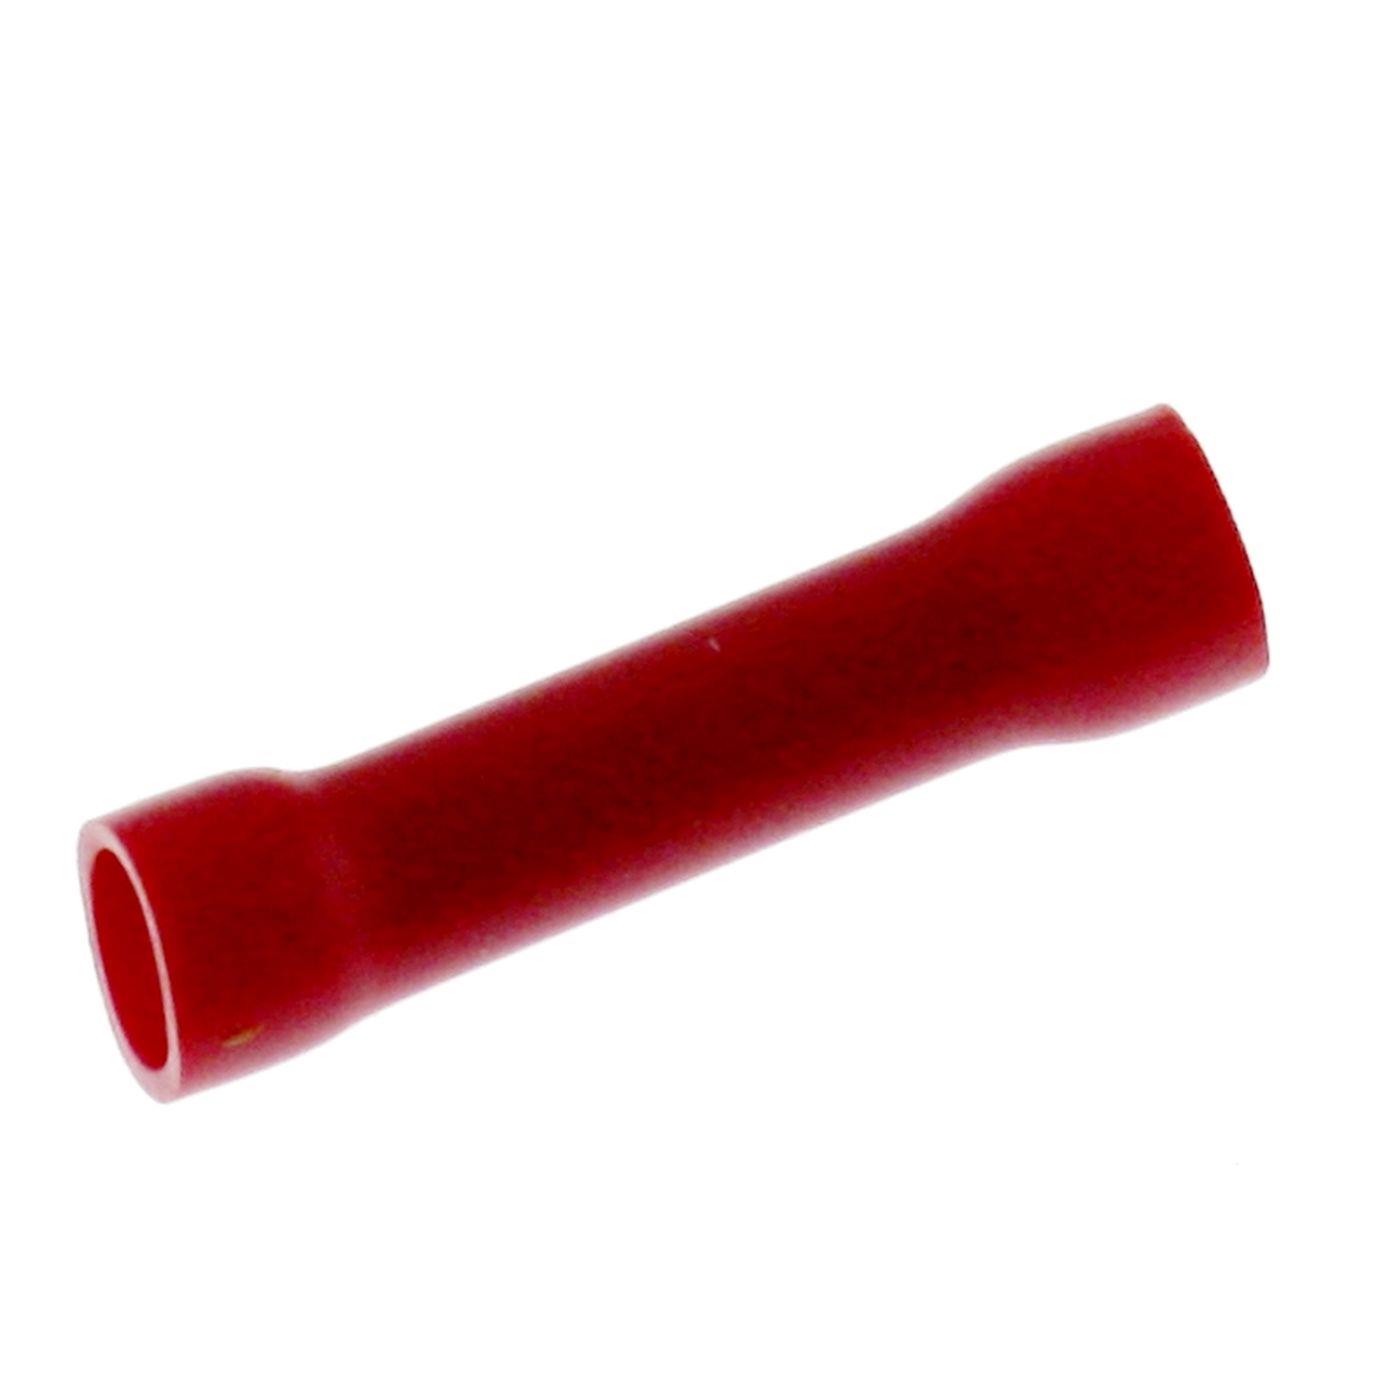 25x Stoßverbinder vollisoliert 0,5-1,5mm² Rot Quetschverbinder Kupfer verzinnt